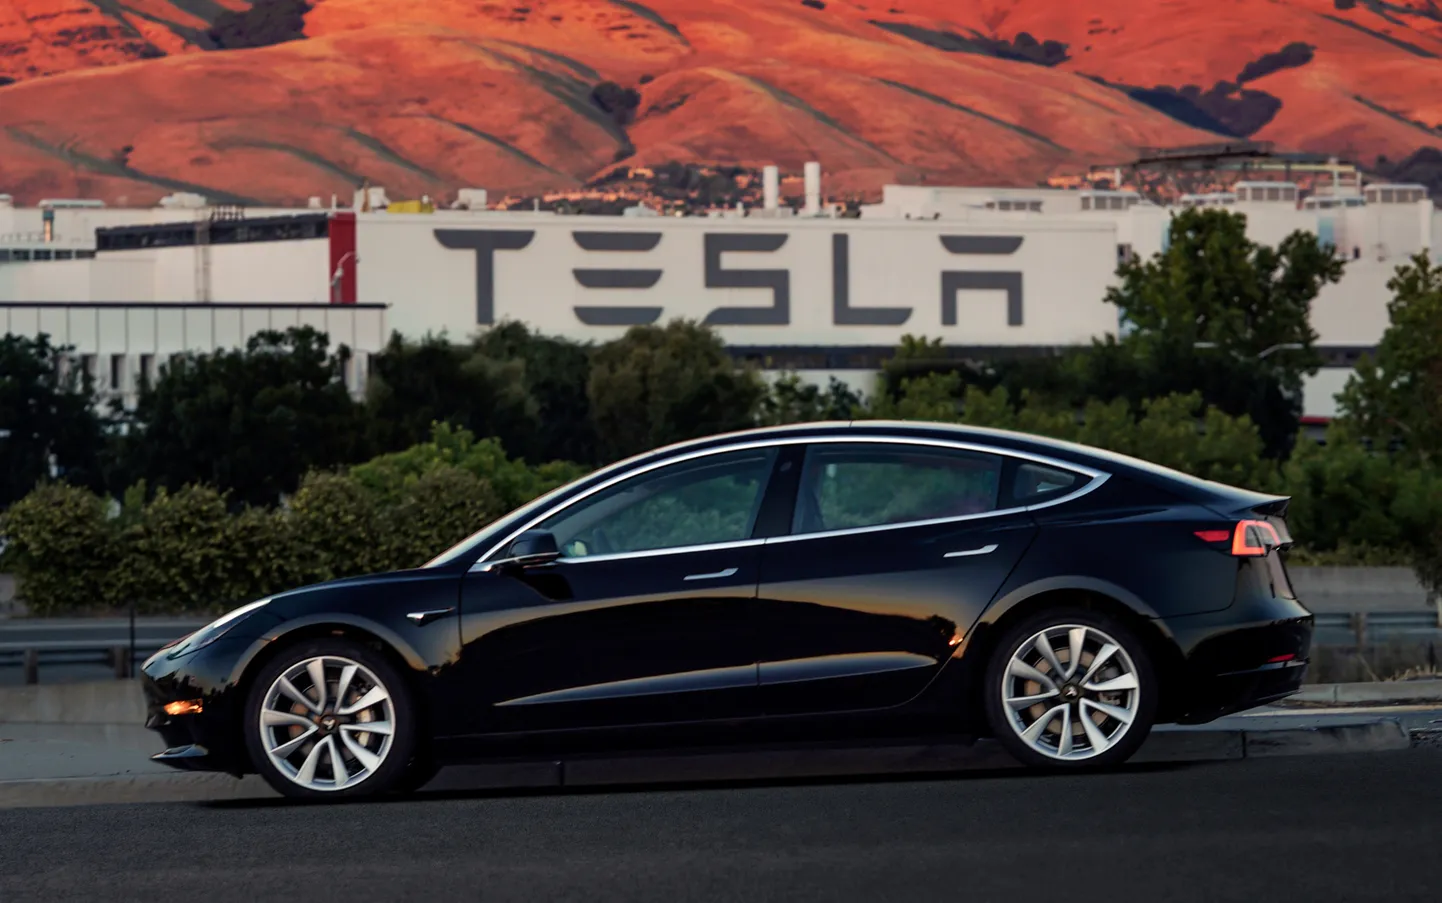 Электромобиль Tesla Model 3. Иллюстративное фото.